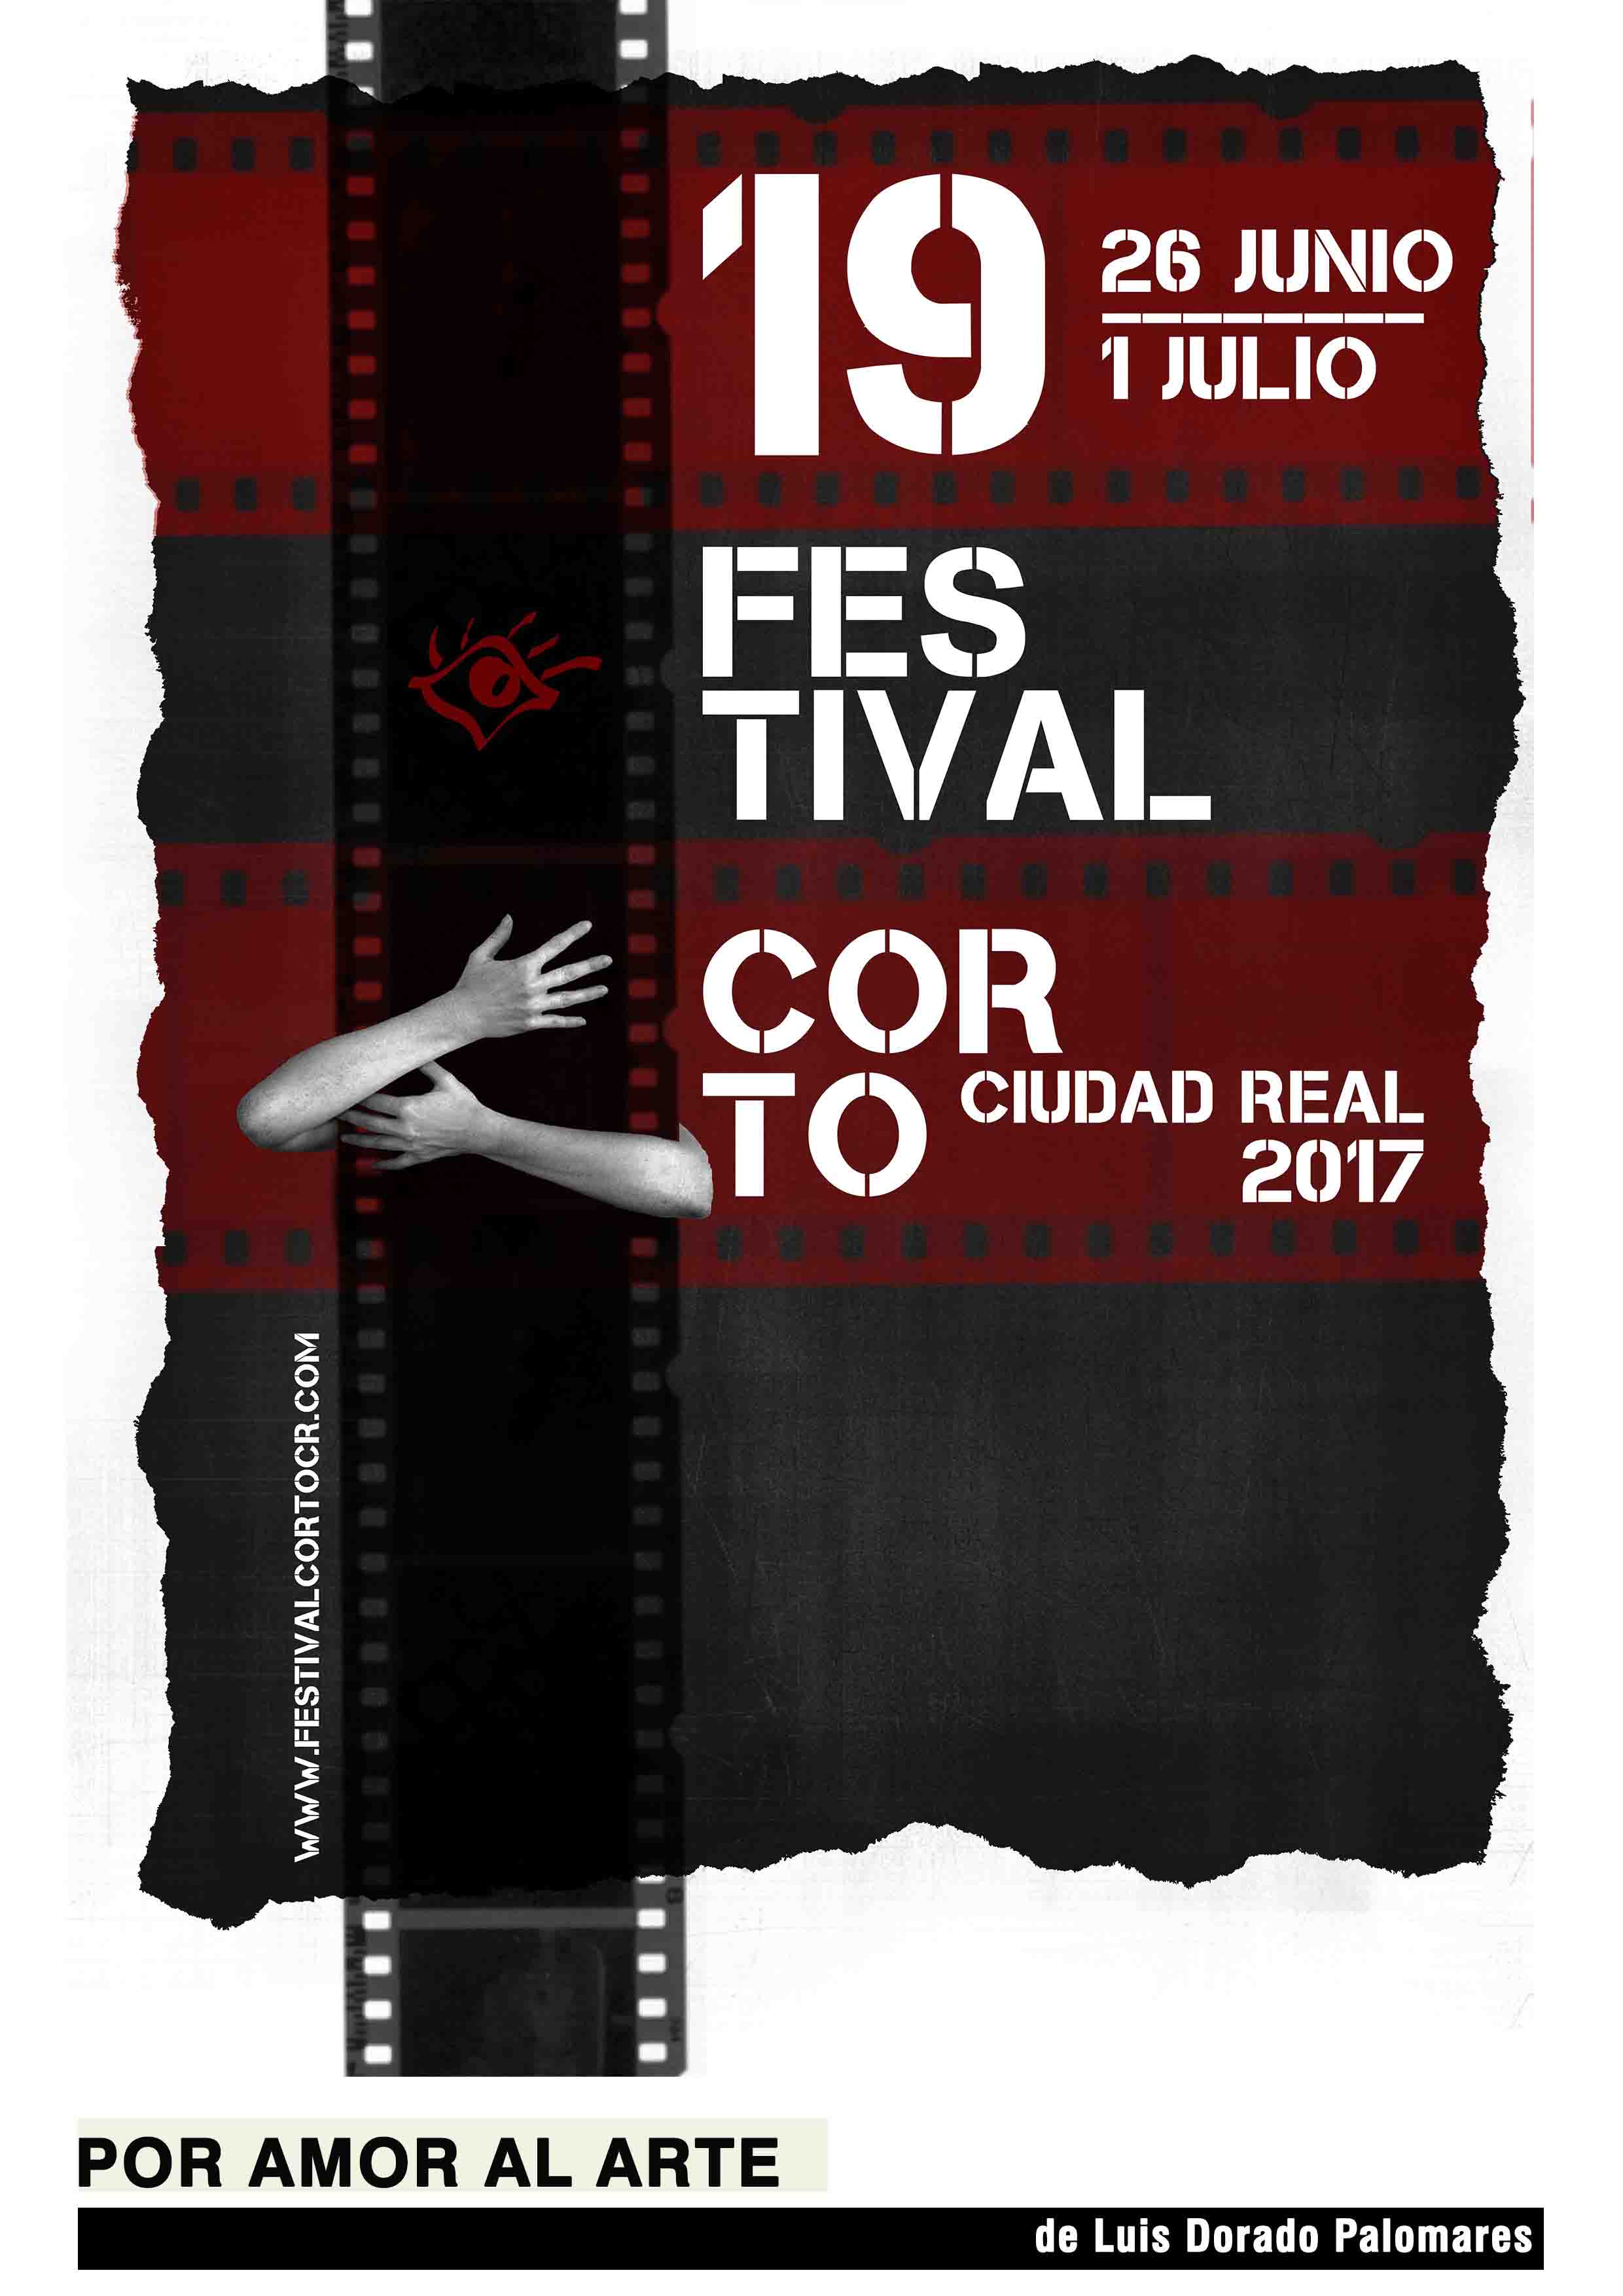 Ediciones anteriores - Festival Corto Ciudad Real